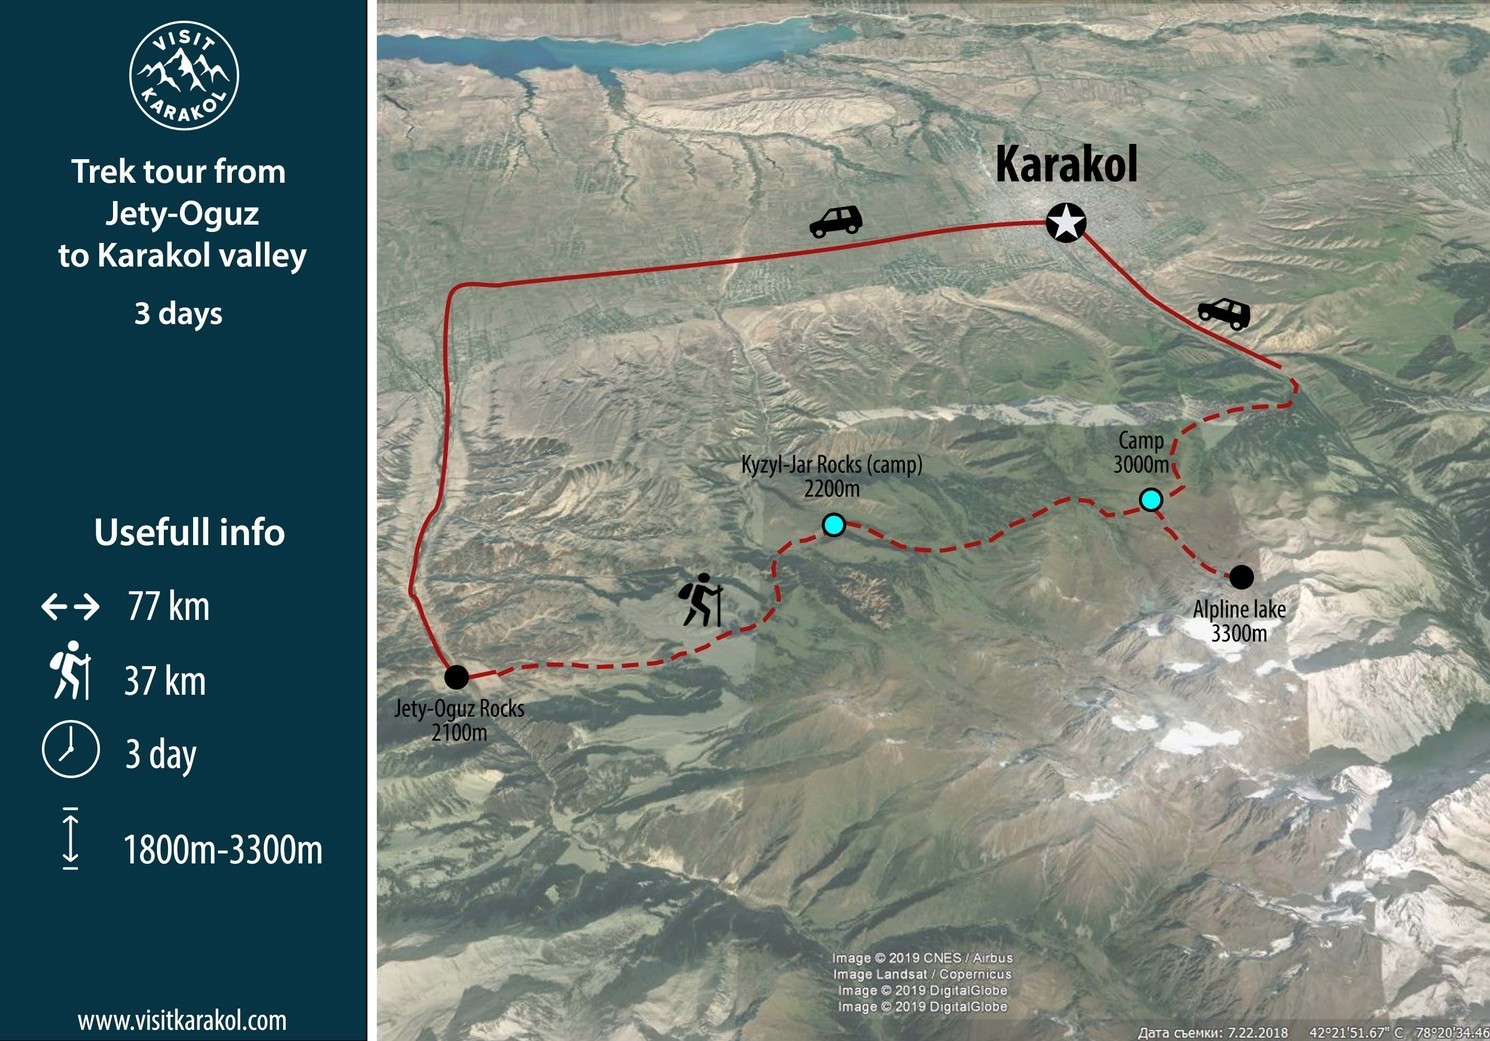 Map of Ala-Kul trekking tour 1 day